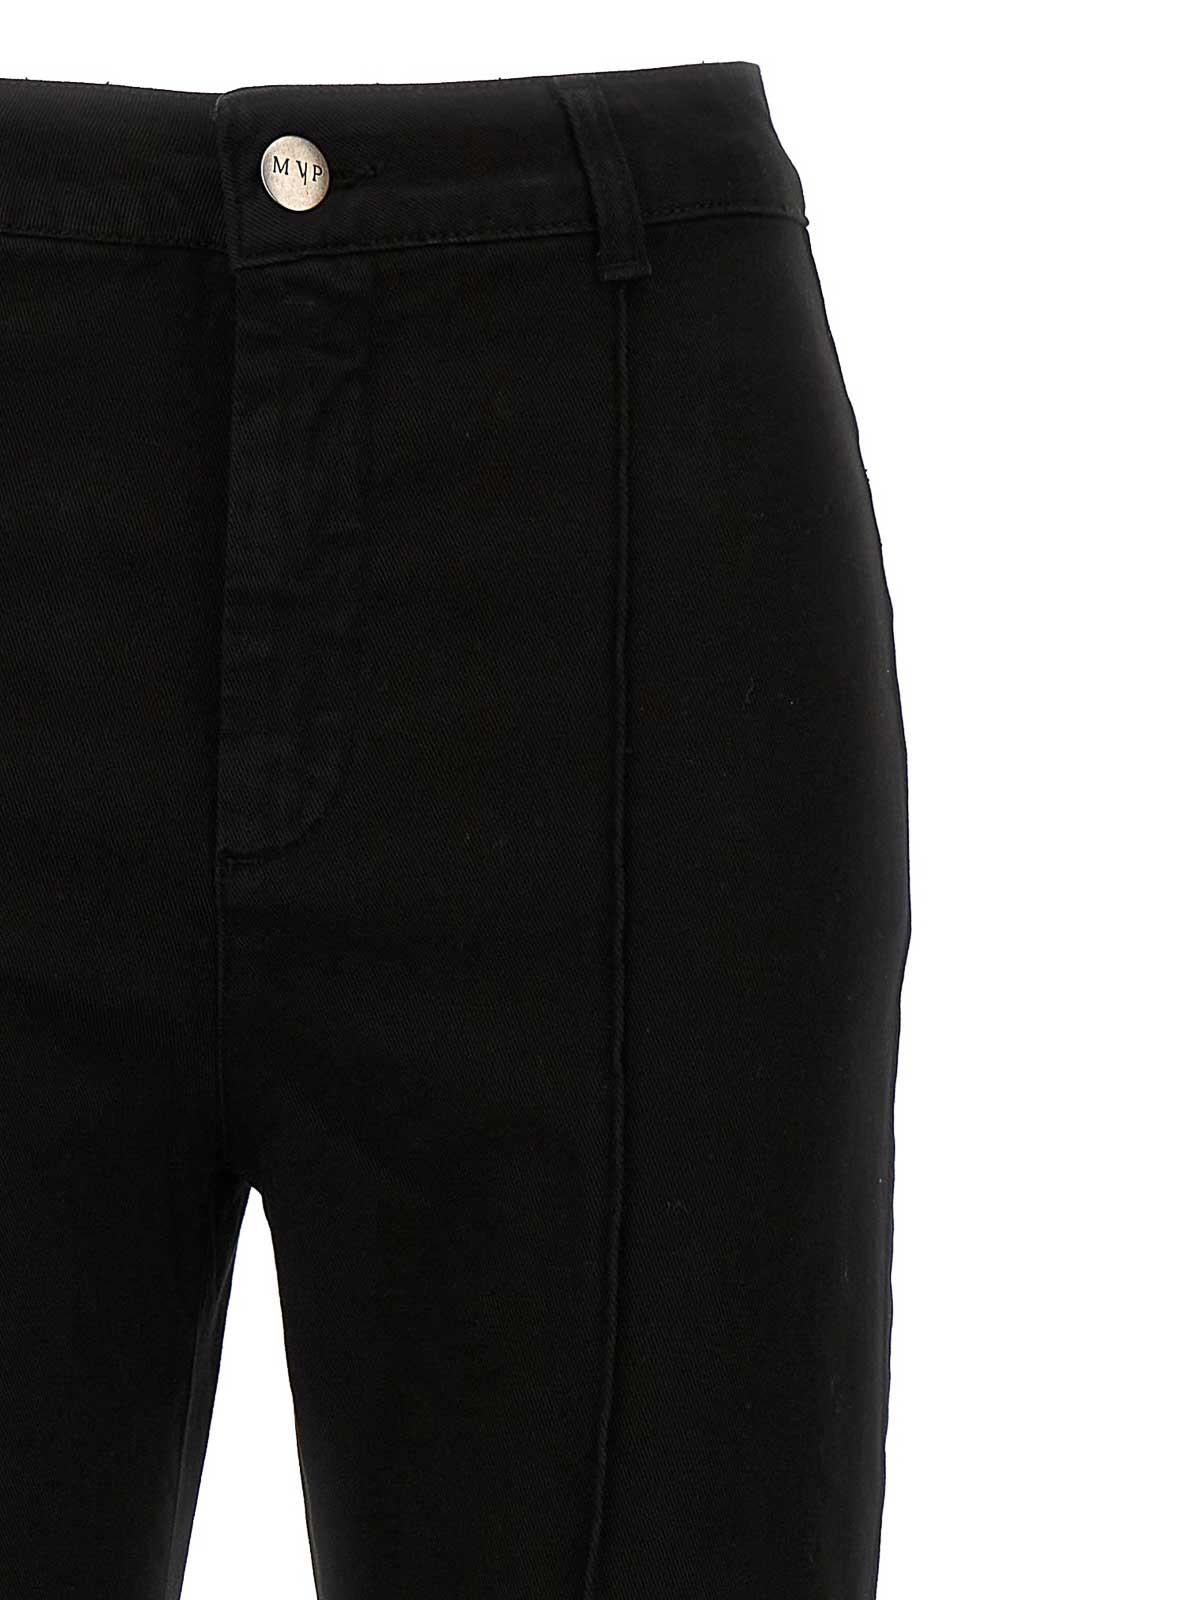 Shop Mvp Wardrobe Bonnet Jeans In Negro